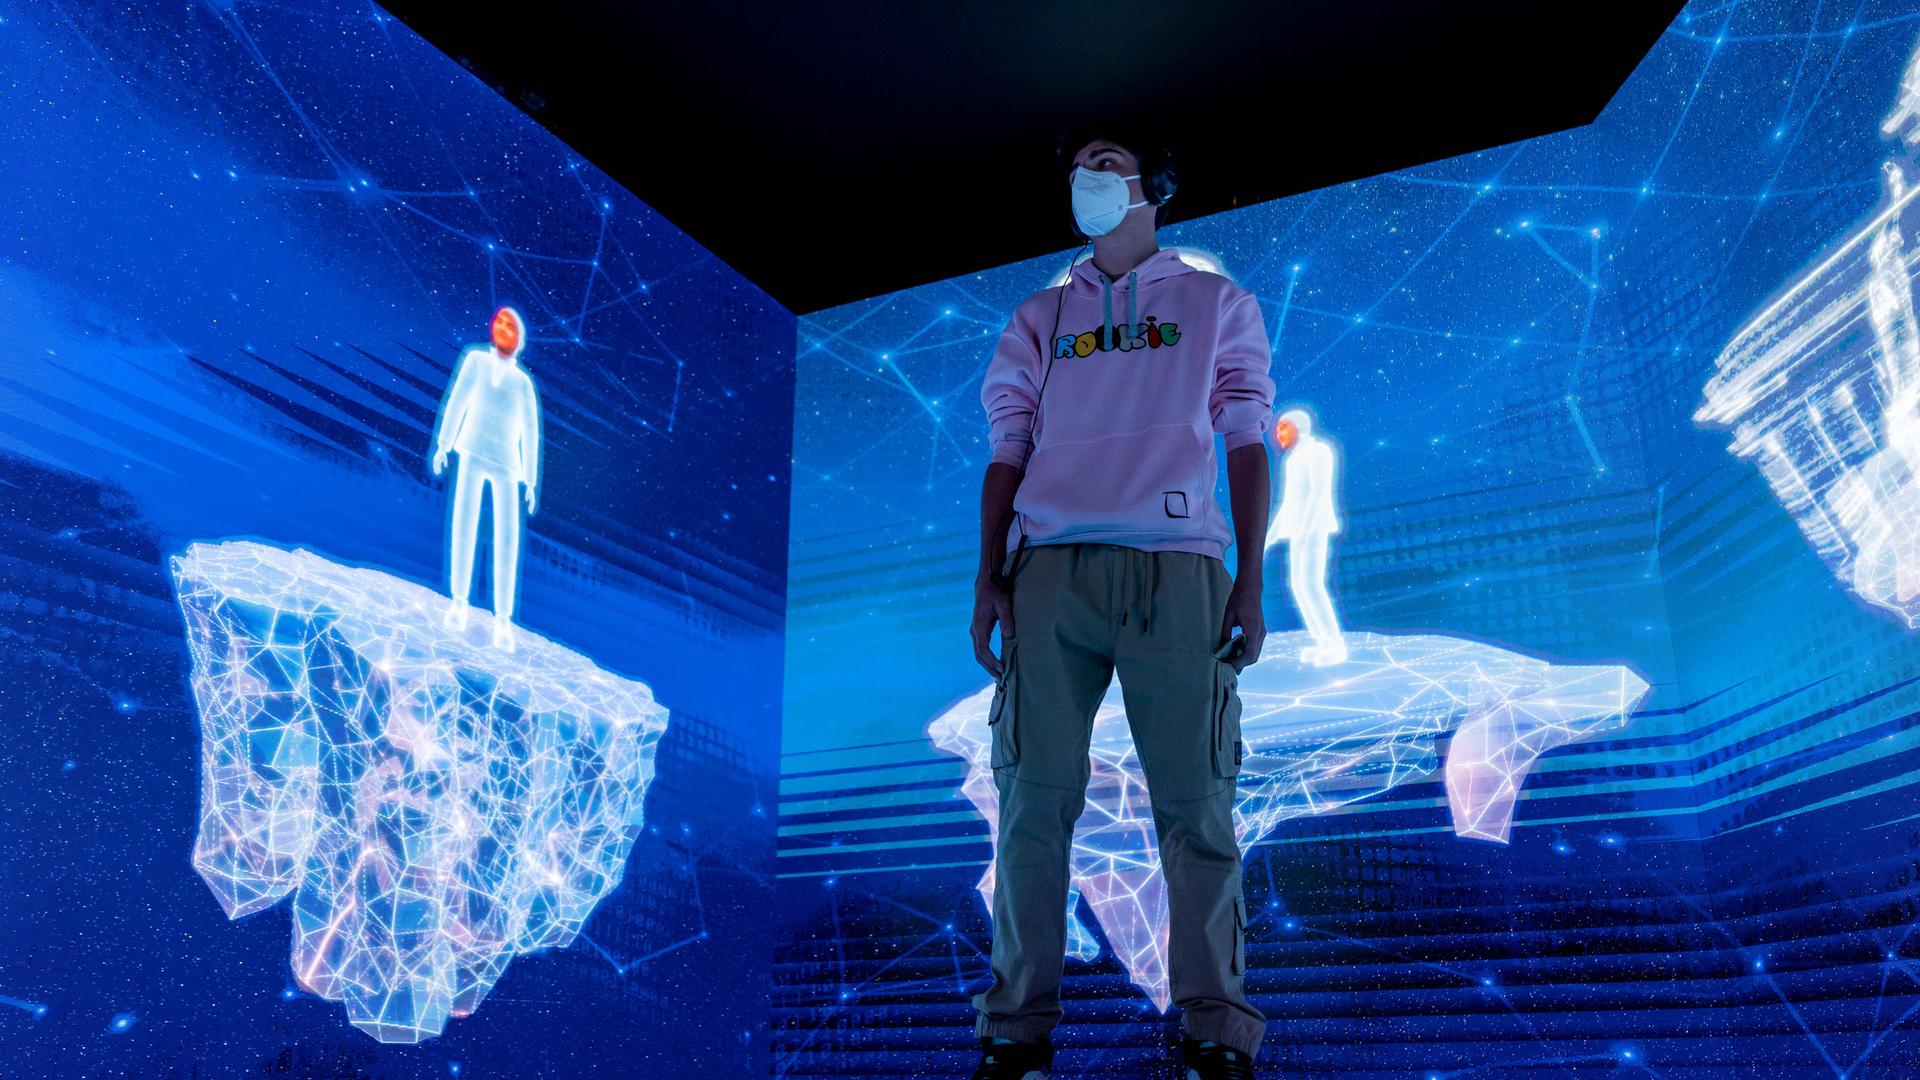 Ein Junge steht mit seinem Avatar in einer virtuellen, blau leuchtenden Landschaft.